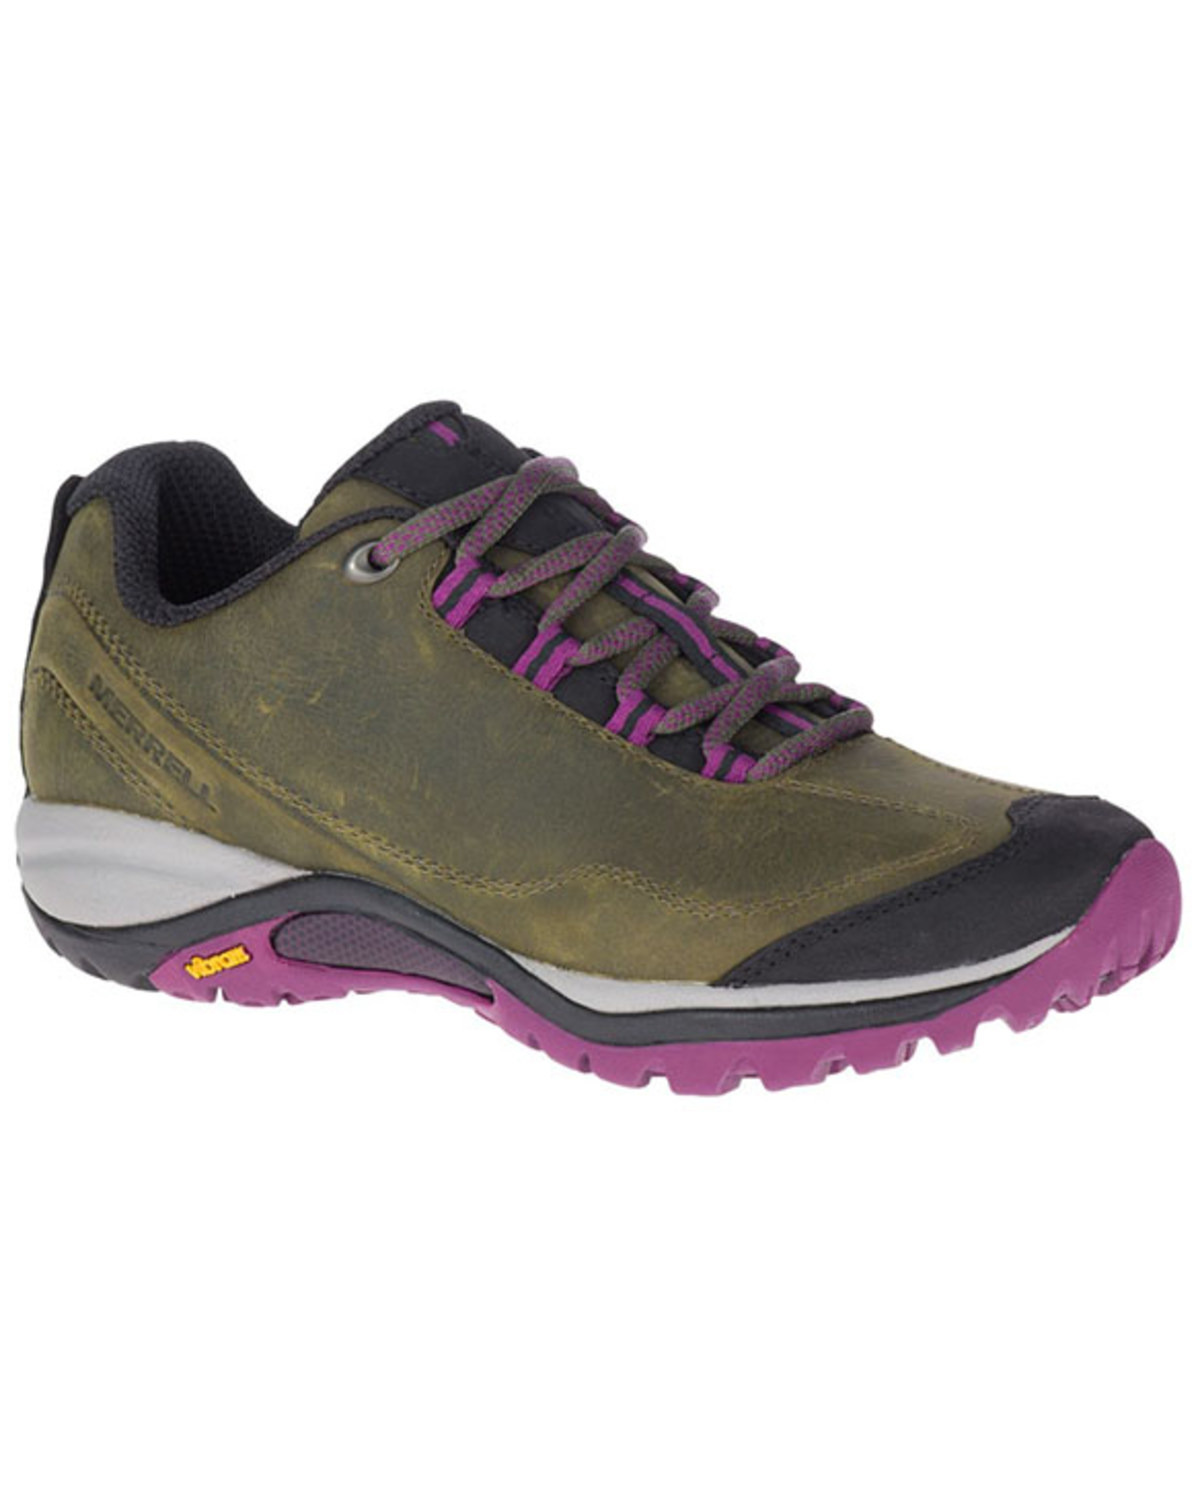 Merrell Women's Siren Traveller 3 Hiking Shoes - Soft Toe